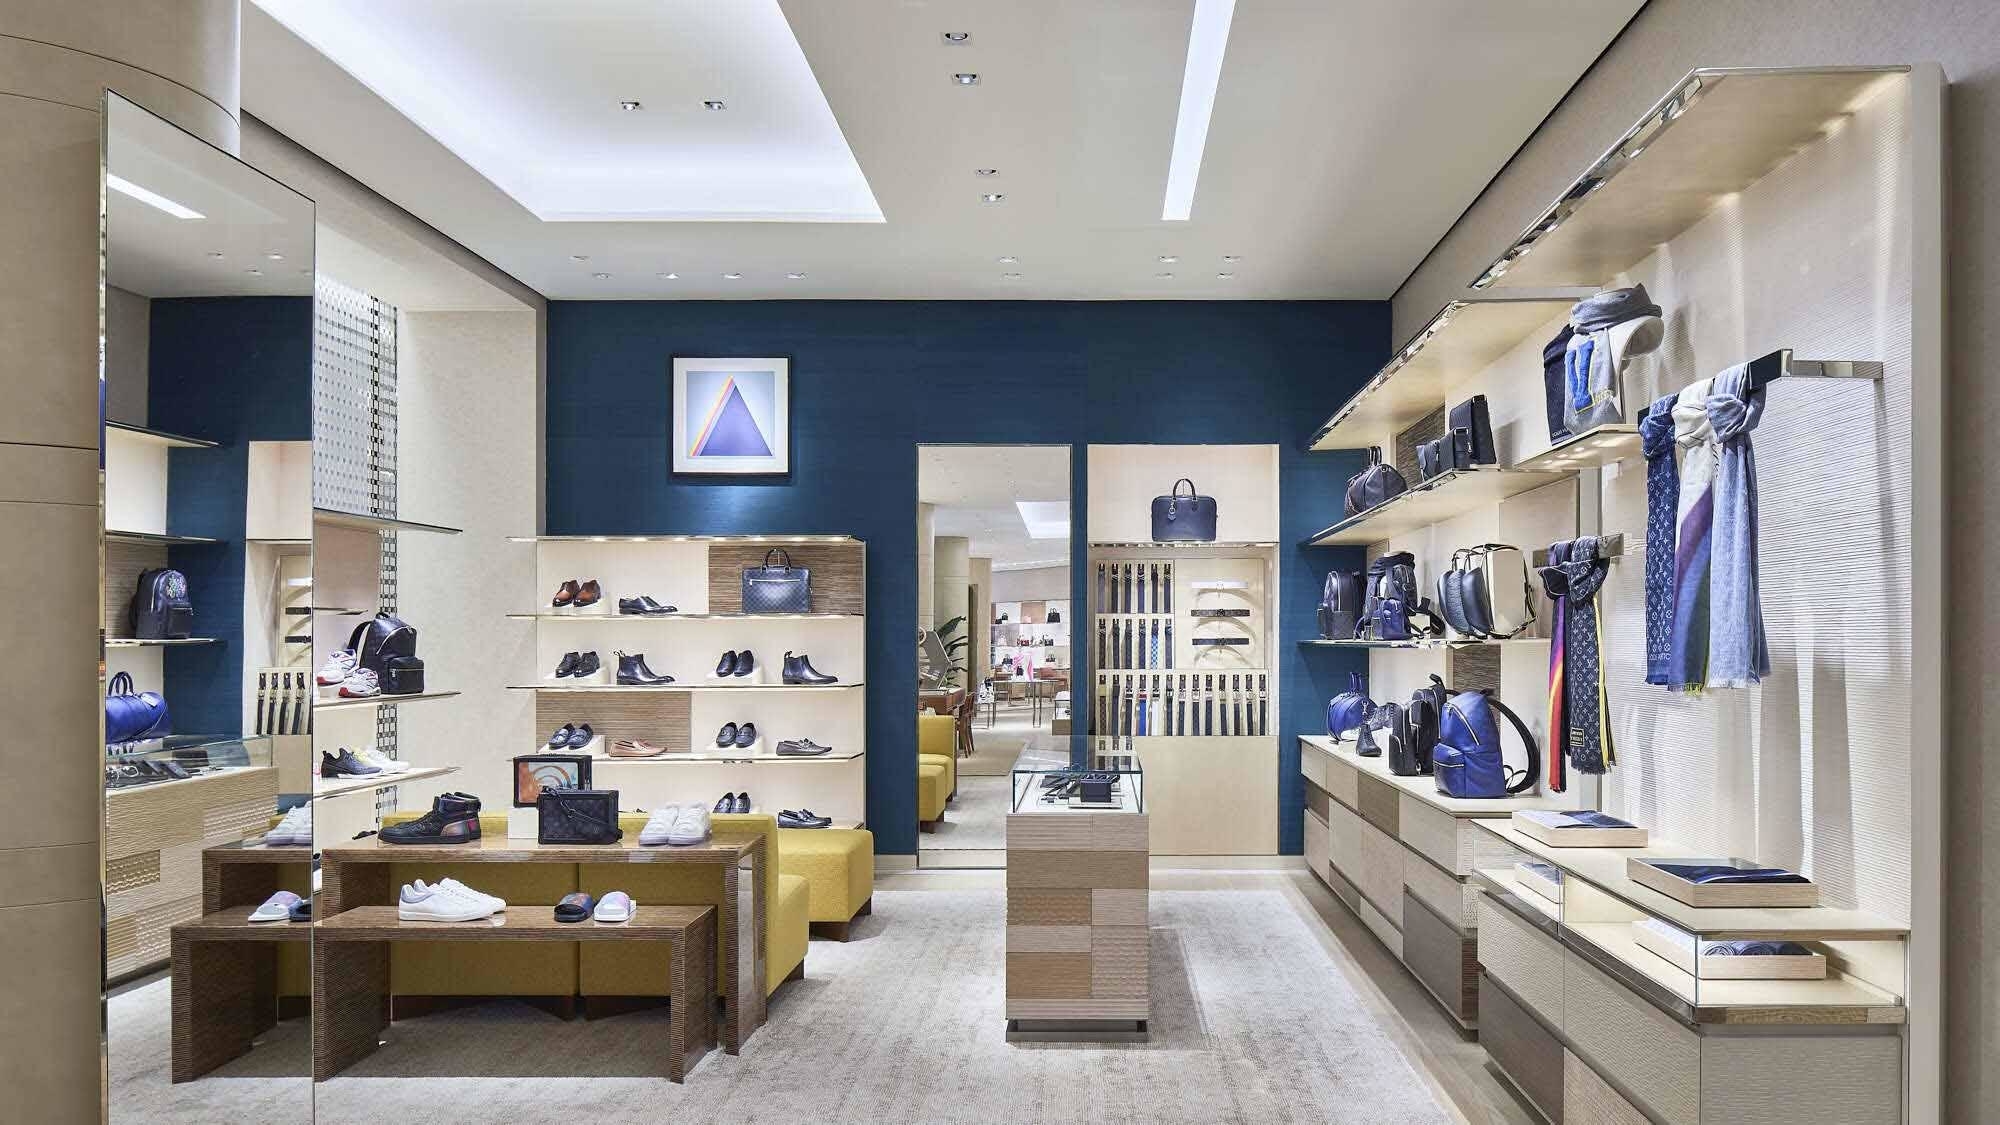 Louis Vuitton Holt Renfrew Ogilvy - Leather Goods Retailers